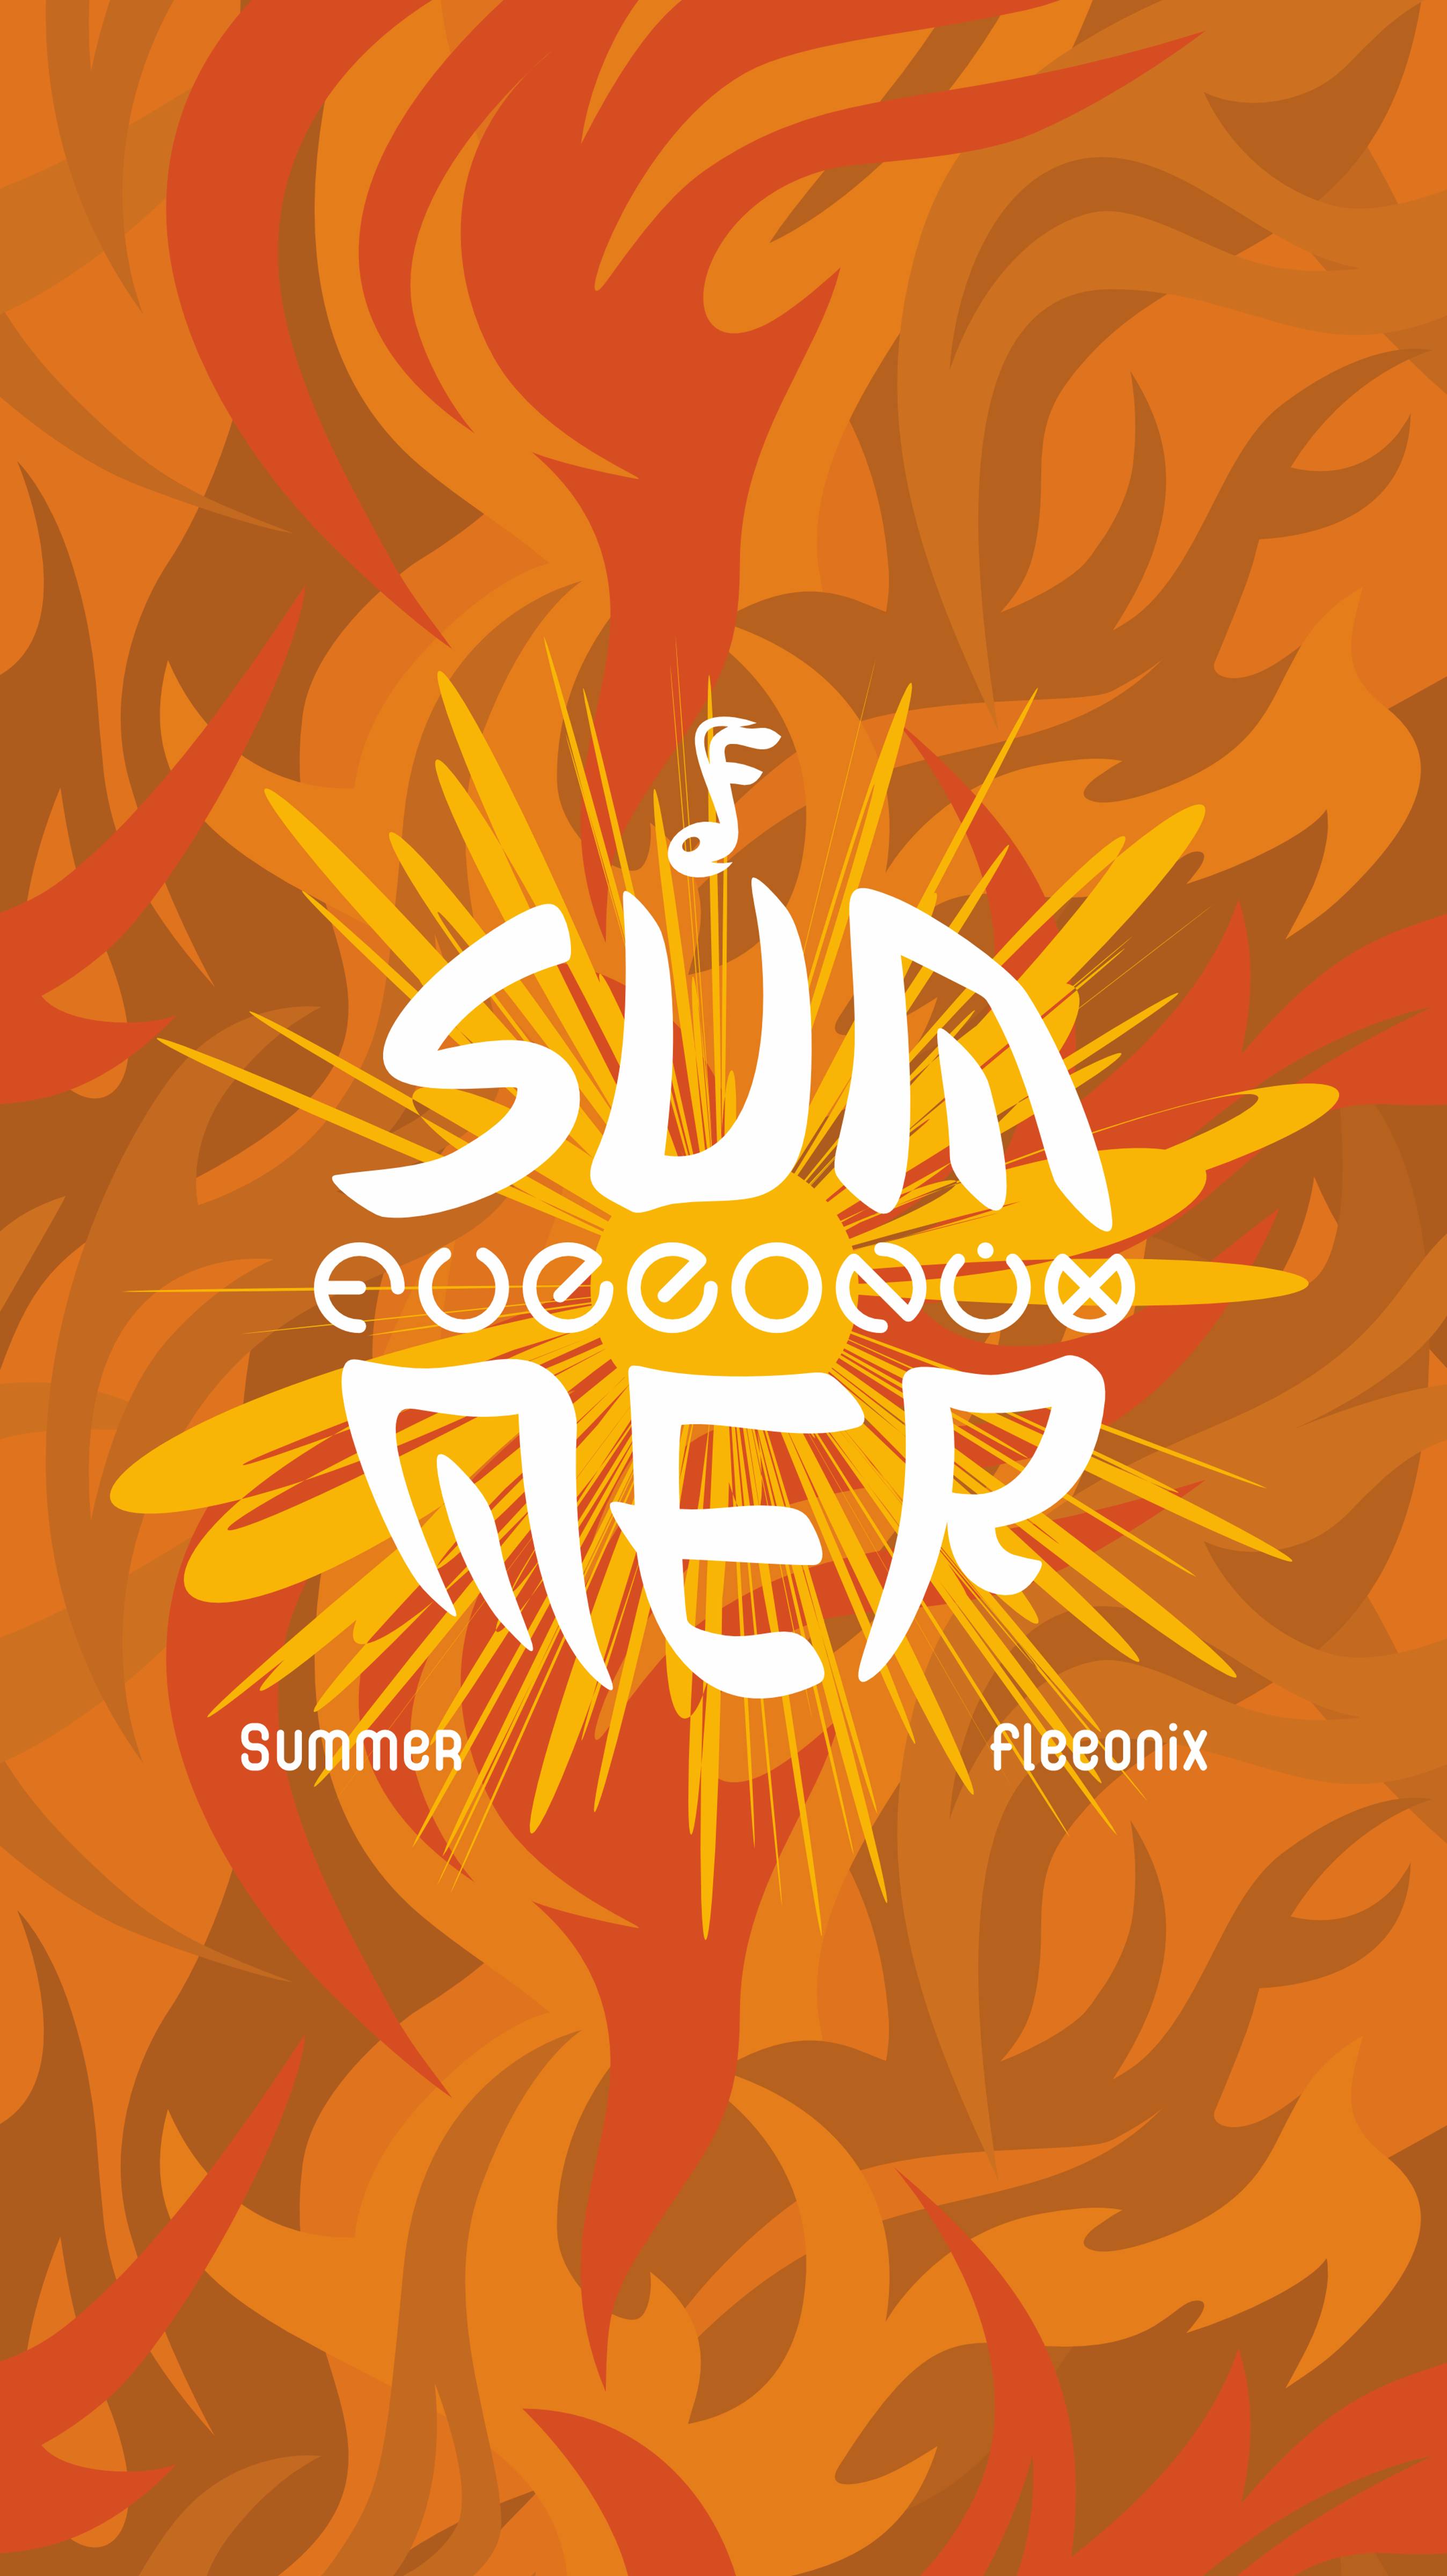 fleeonix - Summer 🔥 (electronic music)